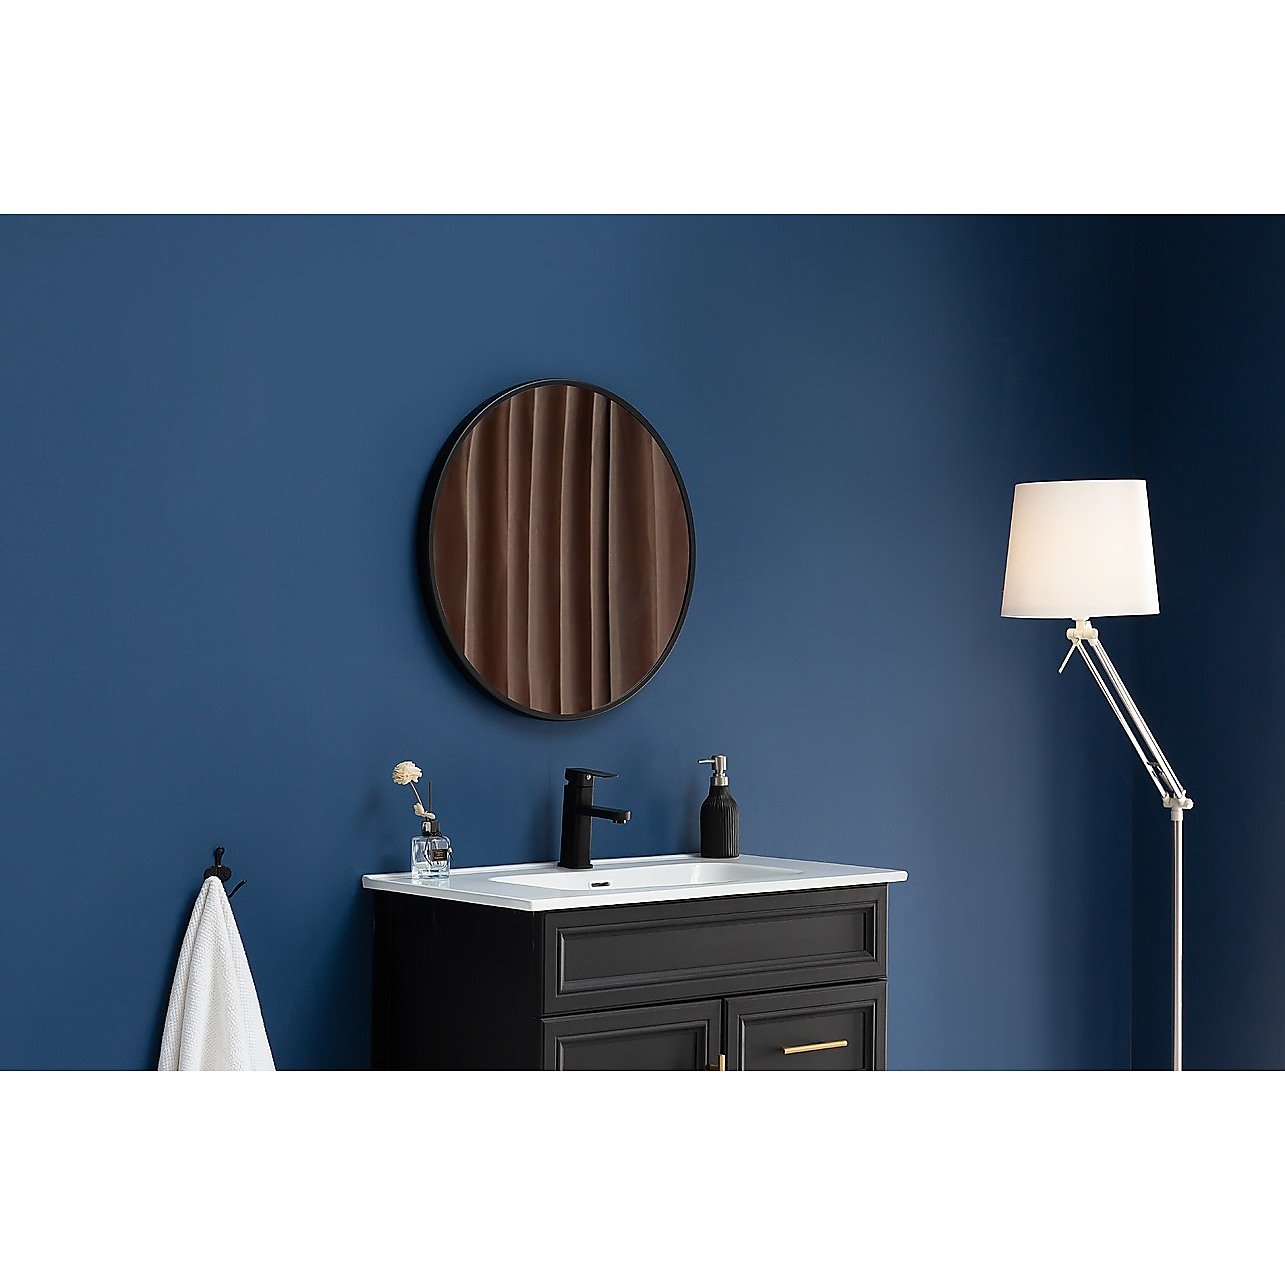 80cm Round Wall Mirror Bathroom Makeup Mirror by Della Francesca -